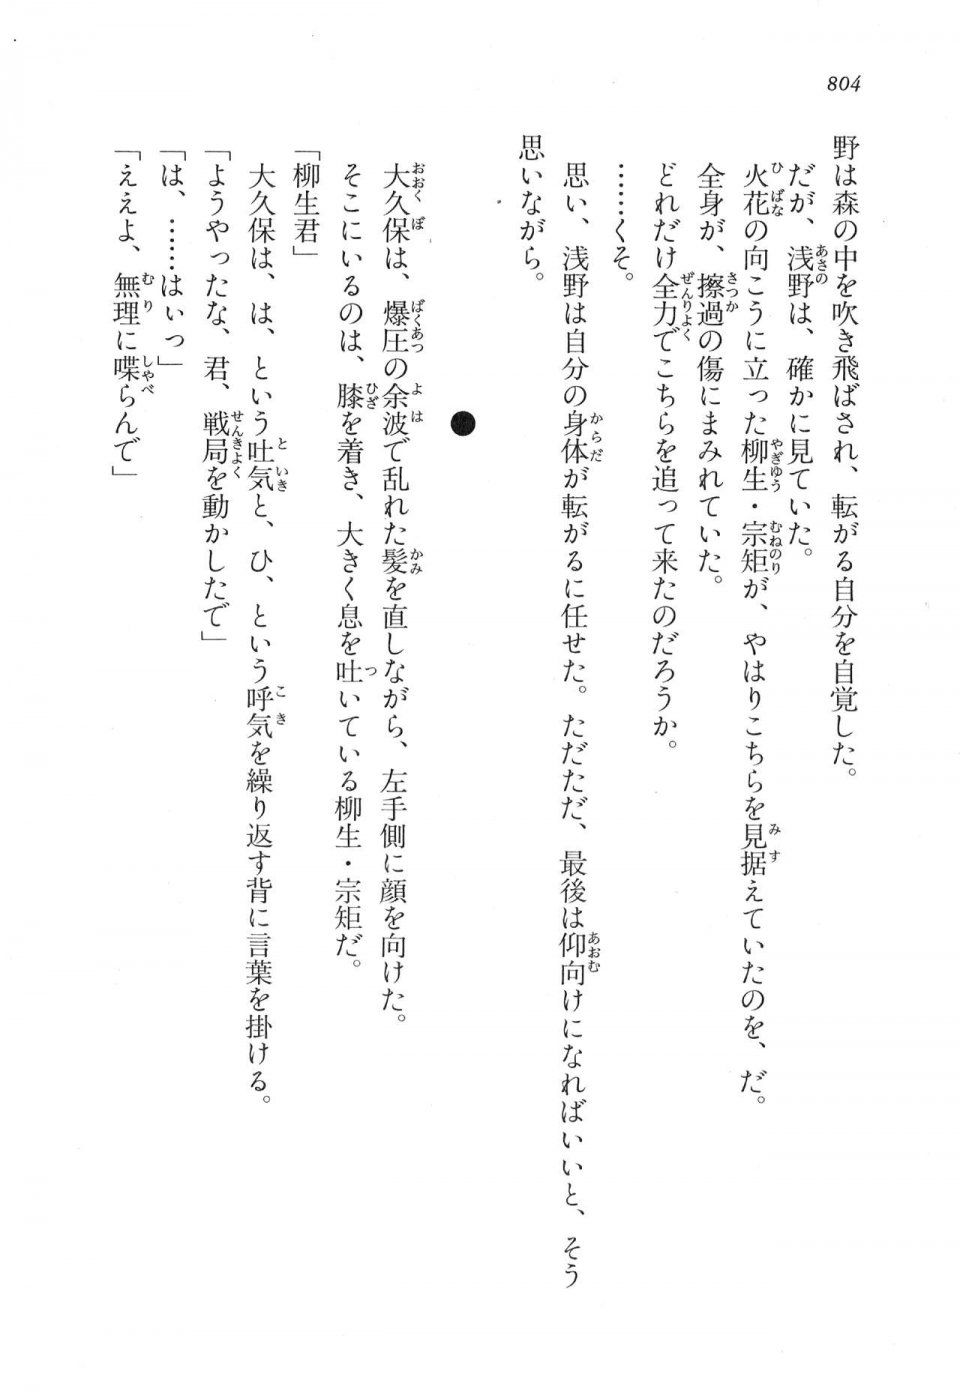 Kyoukai Senjou no Horizon LN Vol 17(7B) - Photo #806